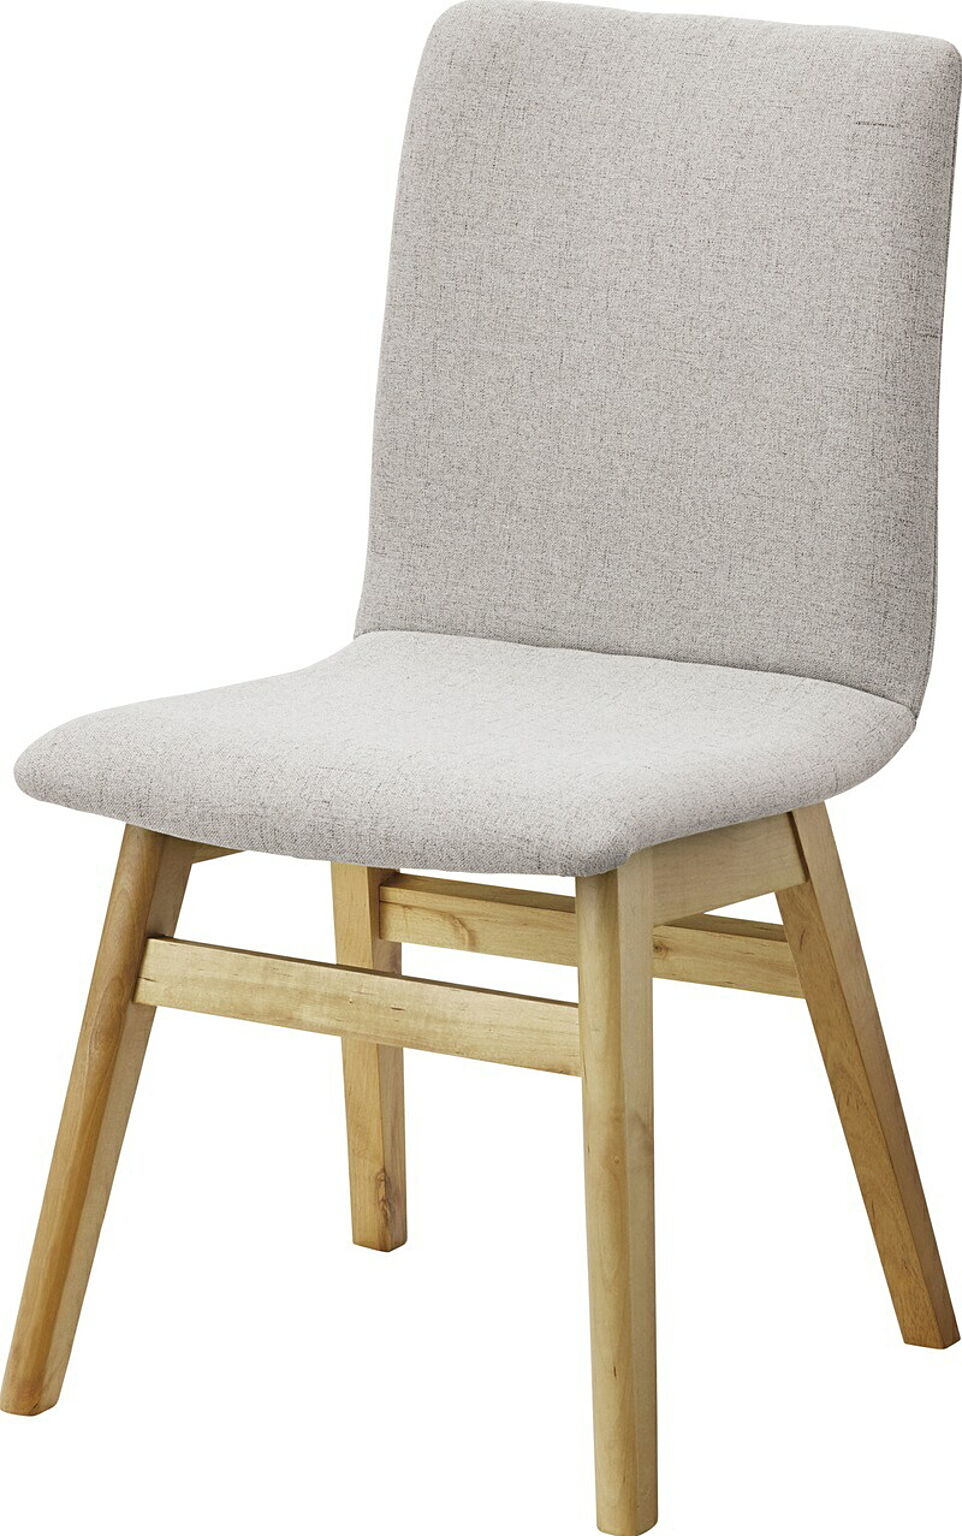 ダイニングチェア W45×D53×H81×SH43 グレー チェア ダイニングチェア ファブリックチェア 木製 食堂椅子 布地 おしゃれ ナチュラル 北欧 シンプル かわいい 完成品 食卓用椅子 